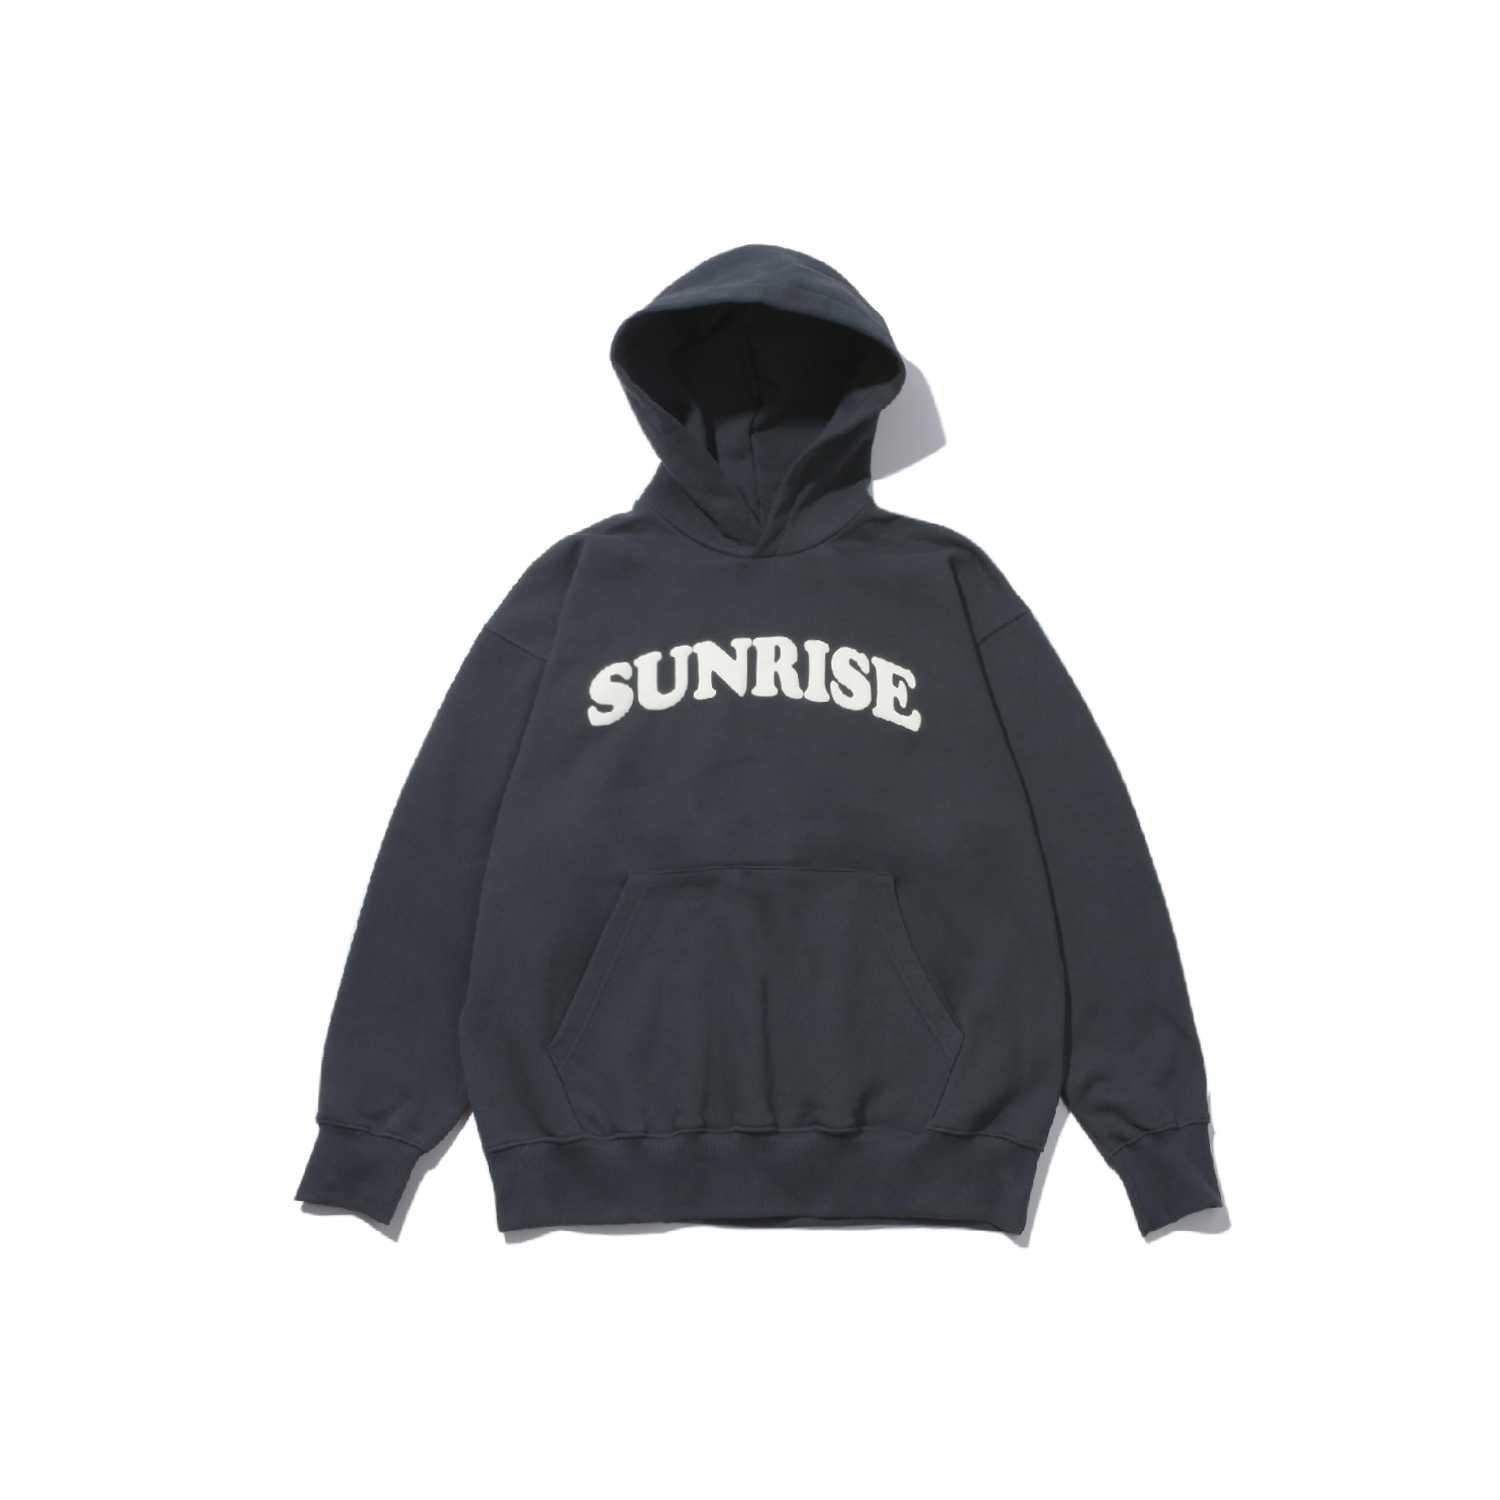 Sunrise hoodie dark gray